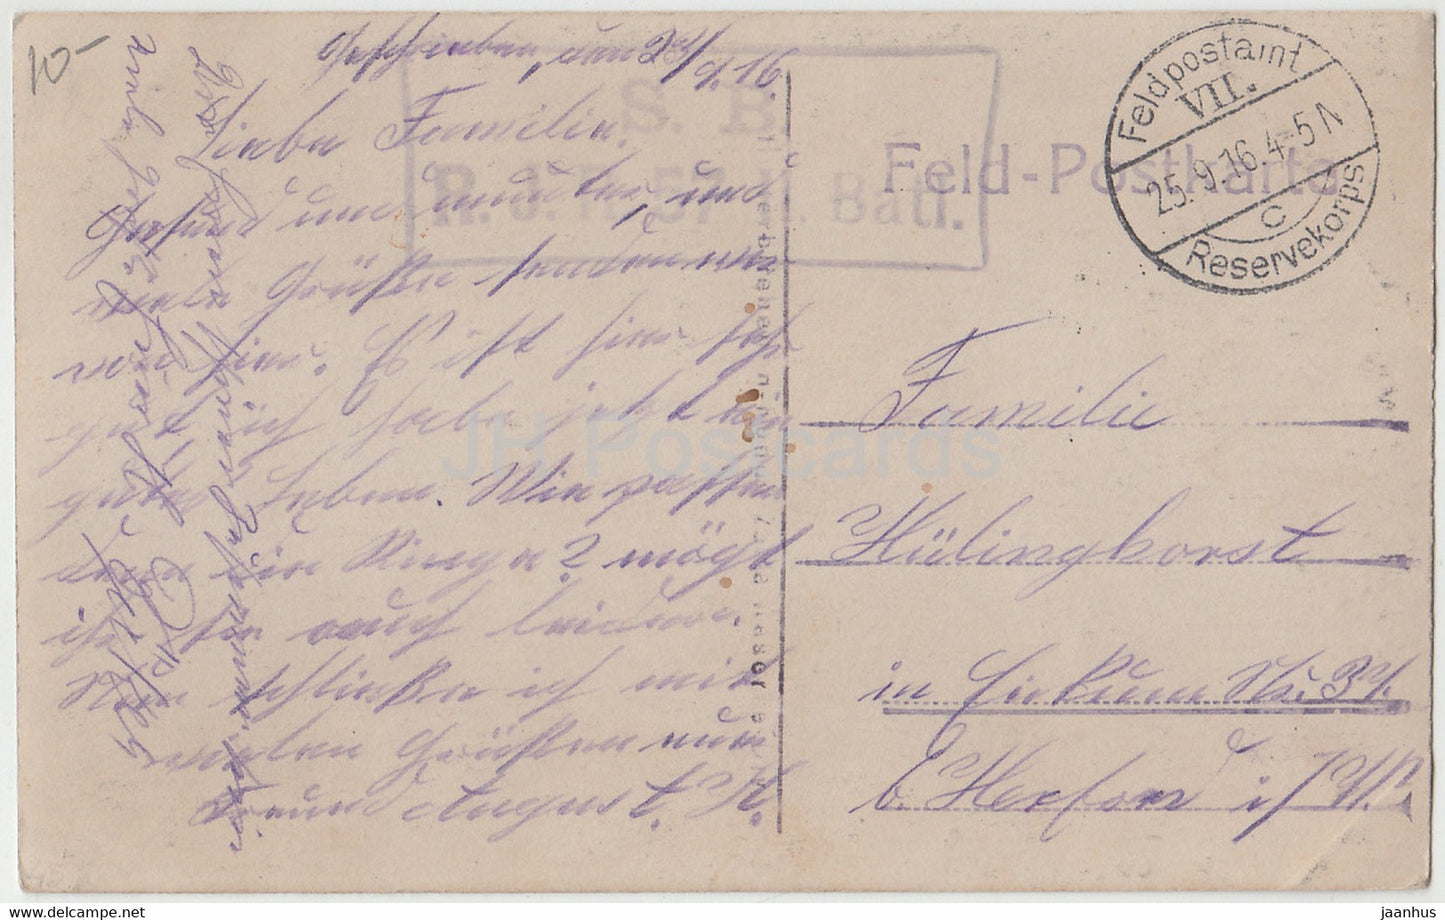 Militär - SBRJR 57 II Batl. - Feldpost - Militär - alte Postkarte - 1916 - Belgien - gebraucht